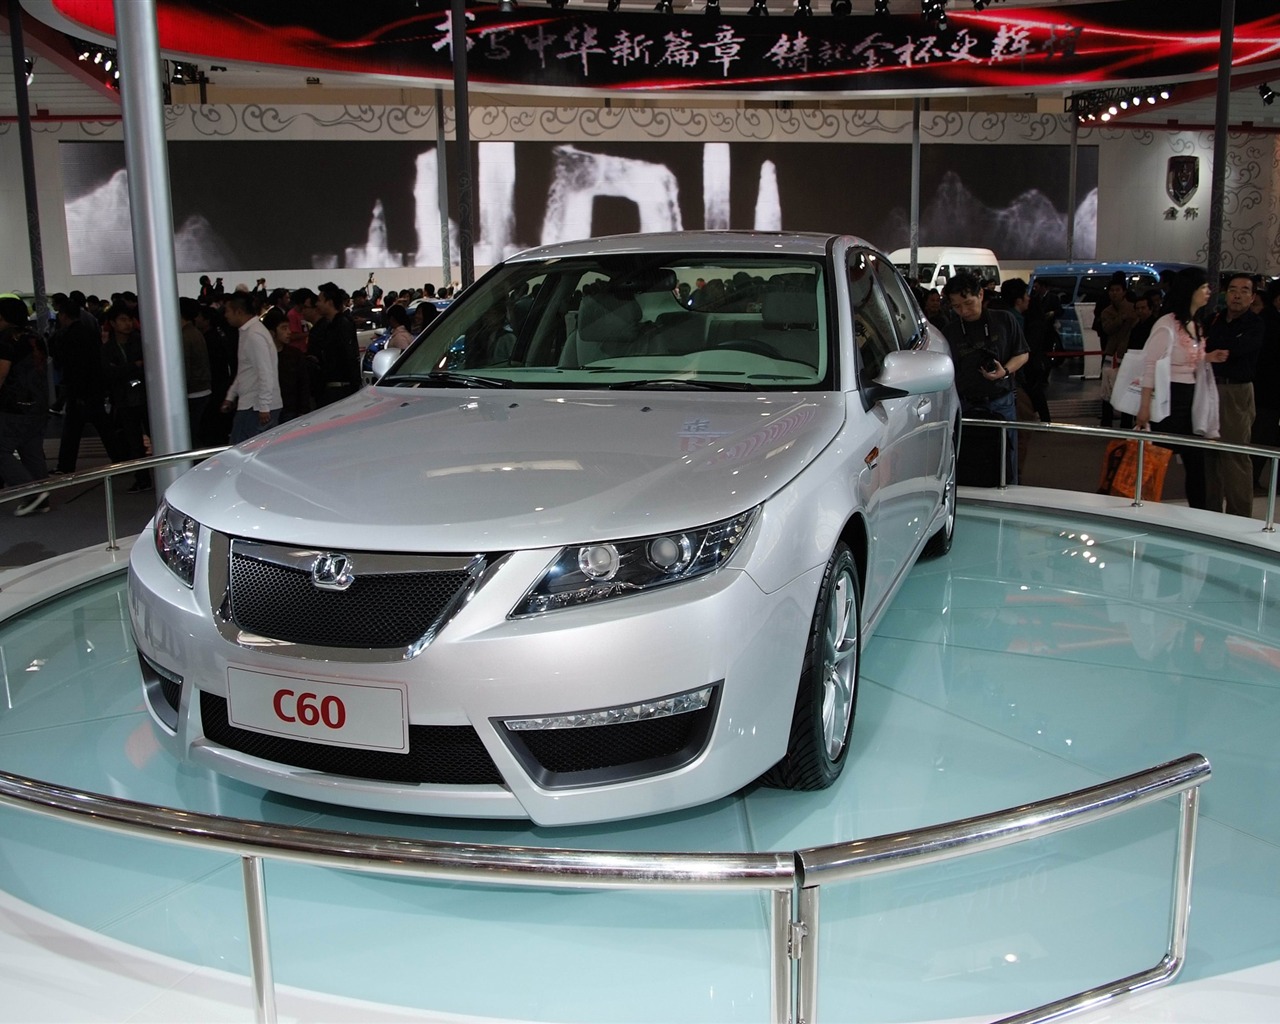 2010北京国际车展 香车 (螺纹钢作品)9 - 1280x1024